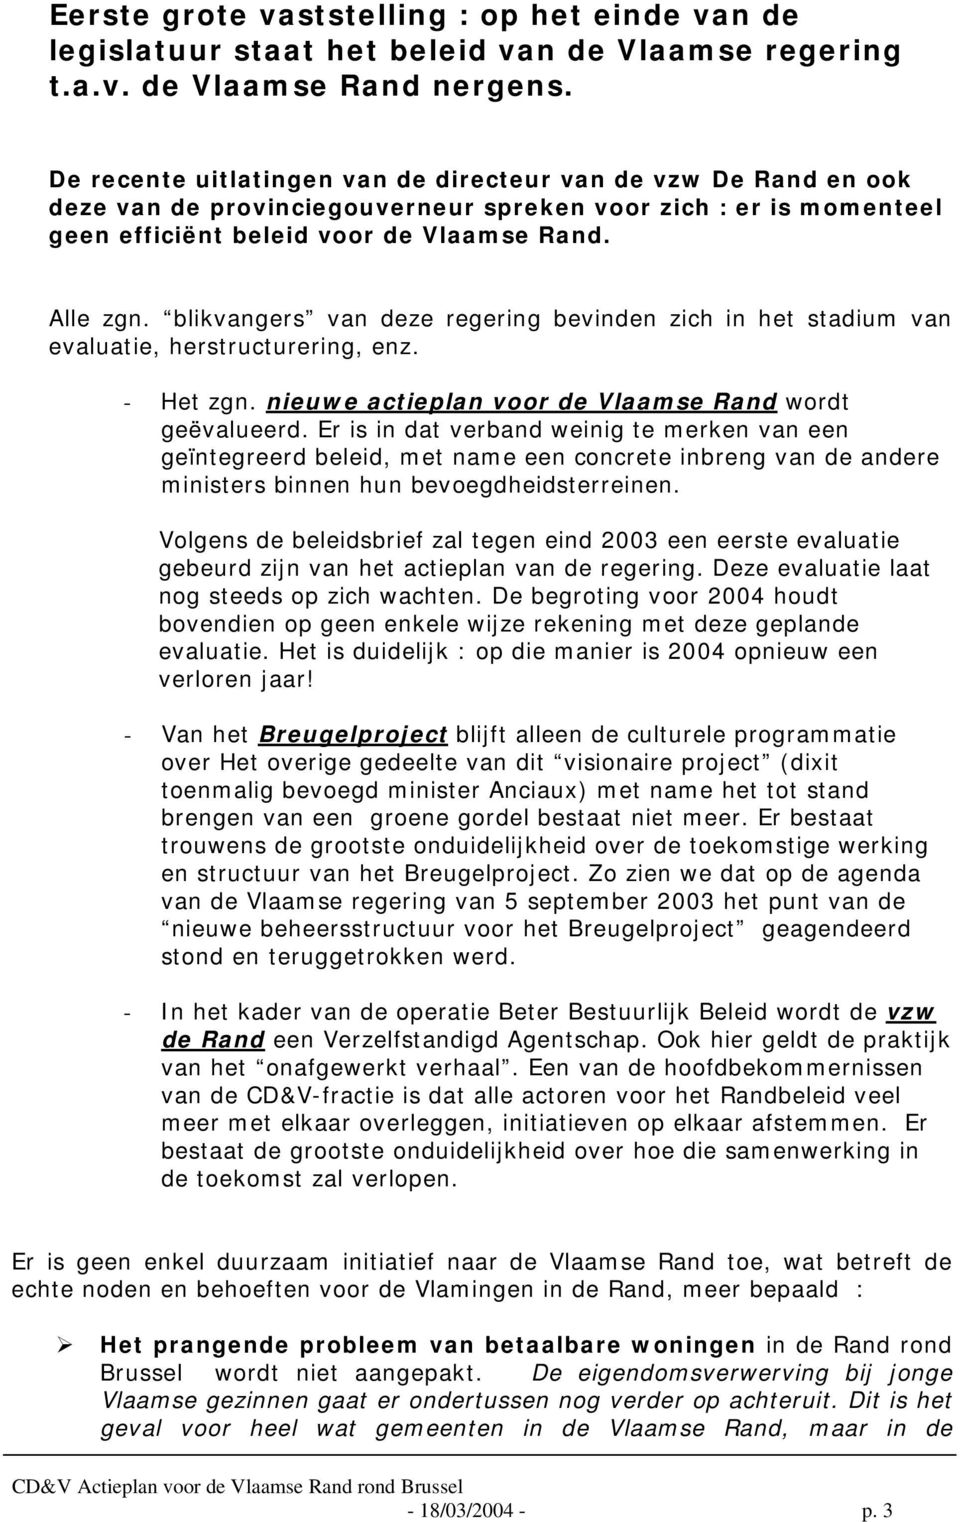 blikvangers van deze regering bevinden zich in het stadium van evaluatie, herstructurering, enz. - Het zgn. nieuwe actieplan voor de Vlaamse Rand wordt geëvalueerd.